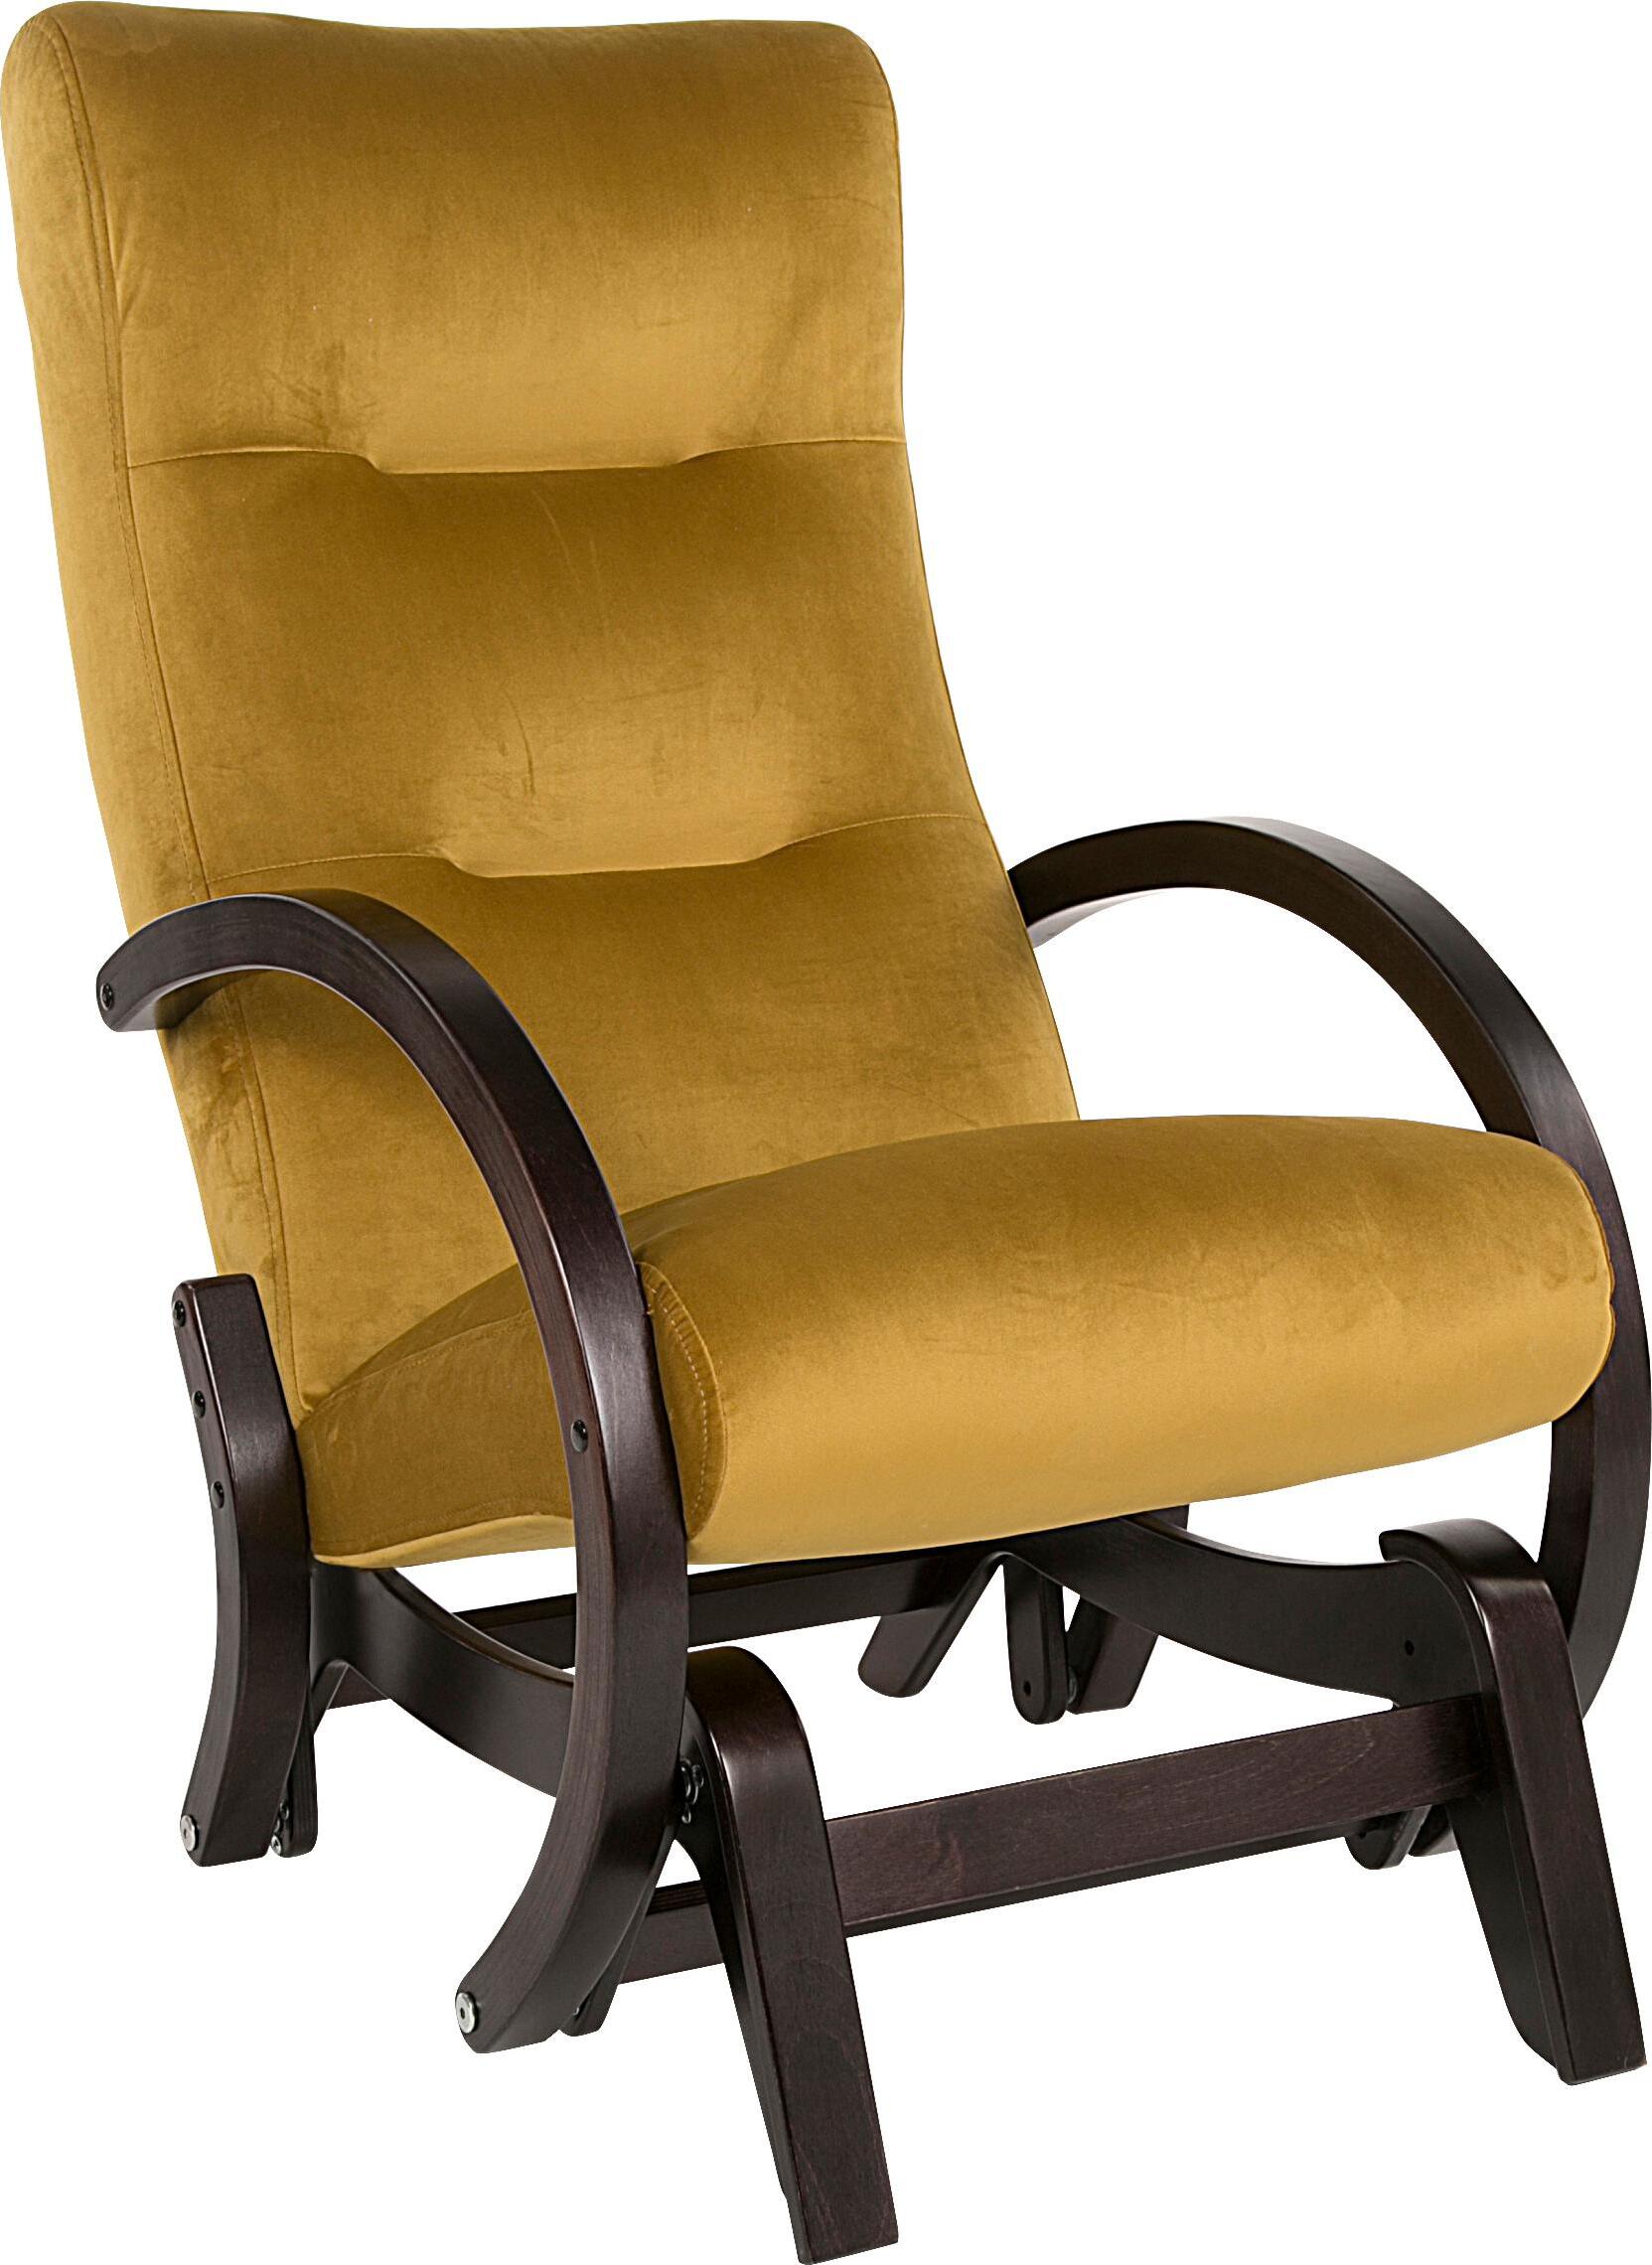 Кресла-качалки купить по низкой цене в интернет-магазине MebelStol